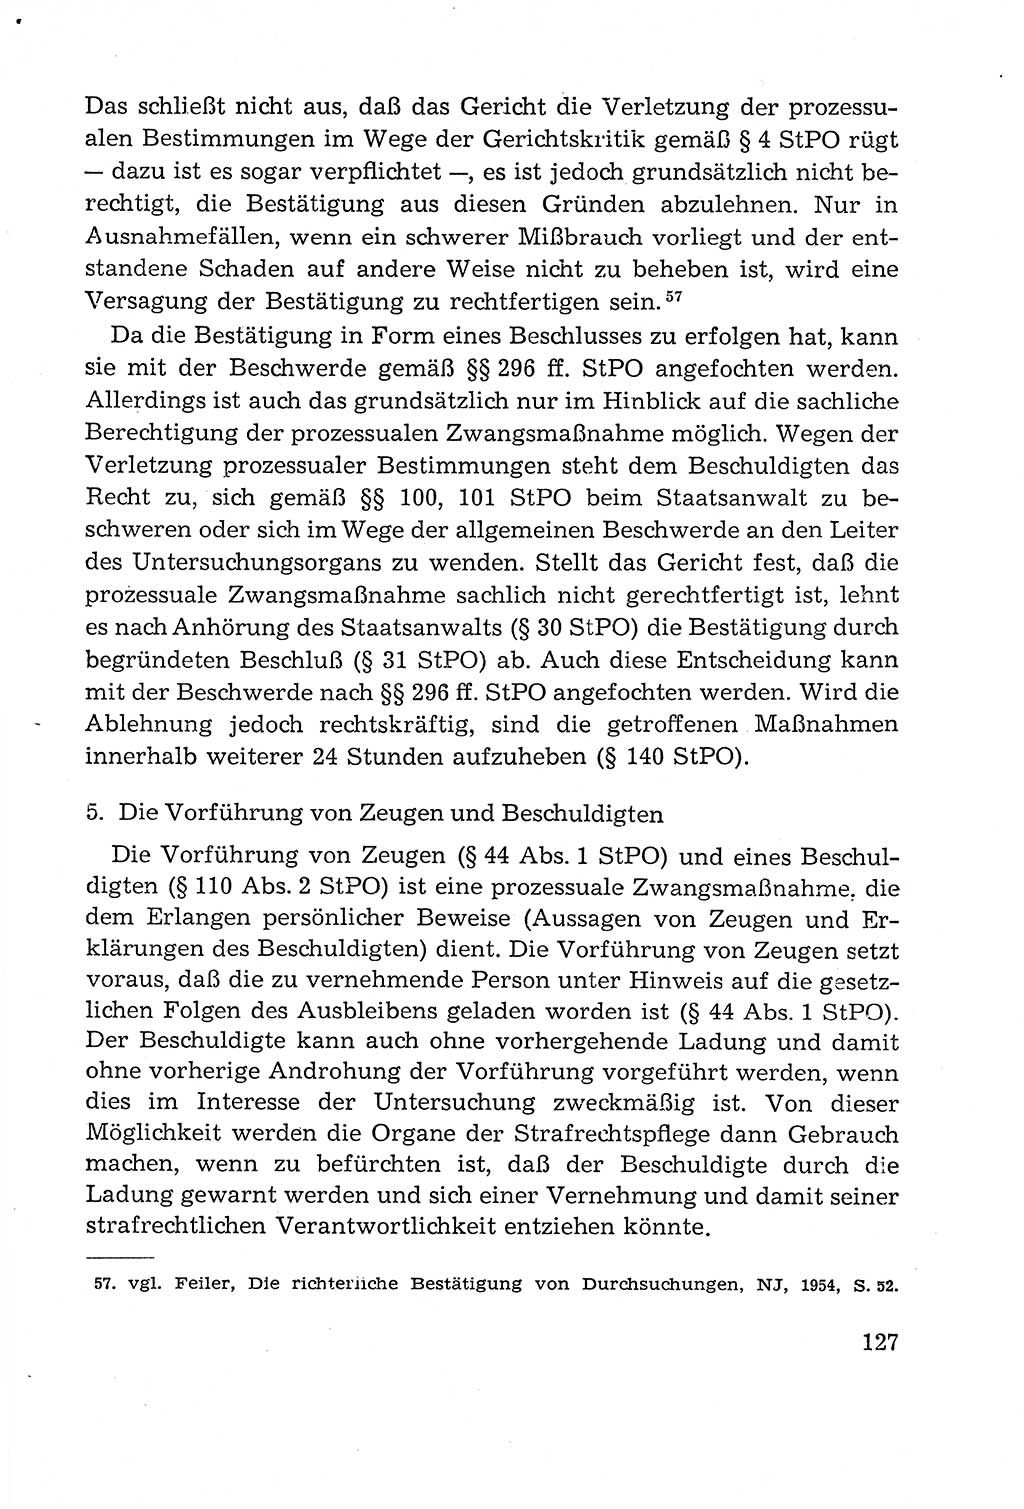 Leitfaden des Strafprozeßrechts der Deutschen Demokratischen Republik (DDR) 1959, Seite 127 (LF StPR DDR 1959, S. 127)